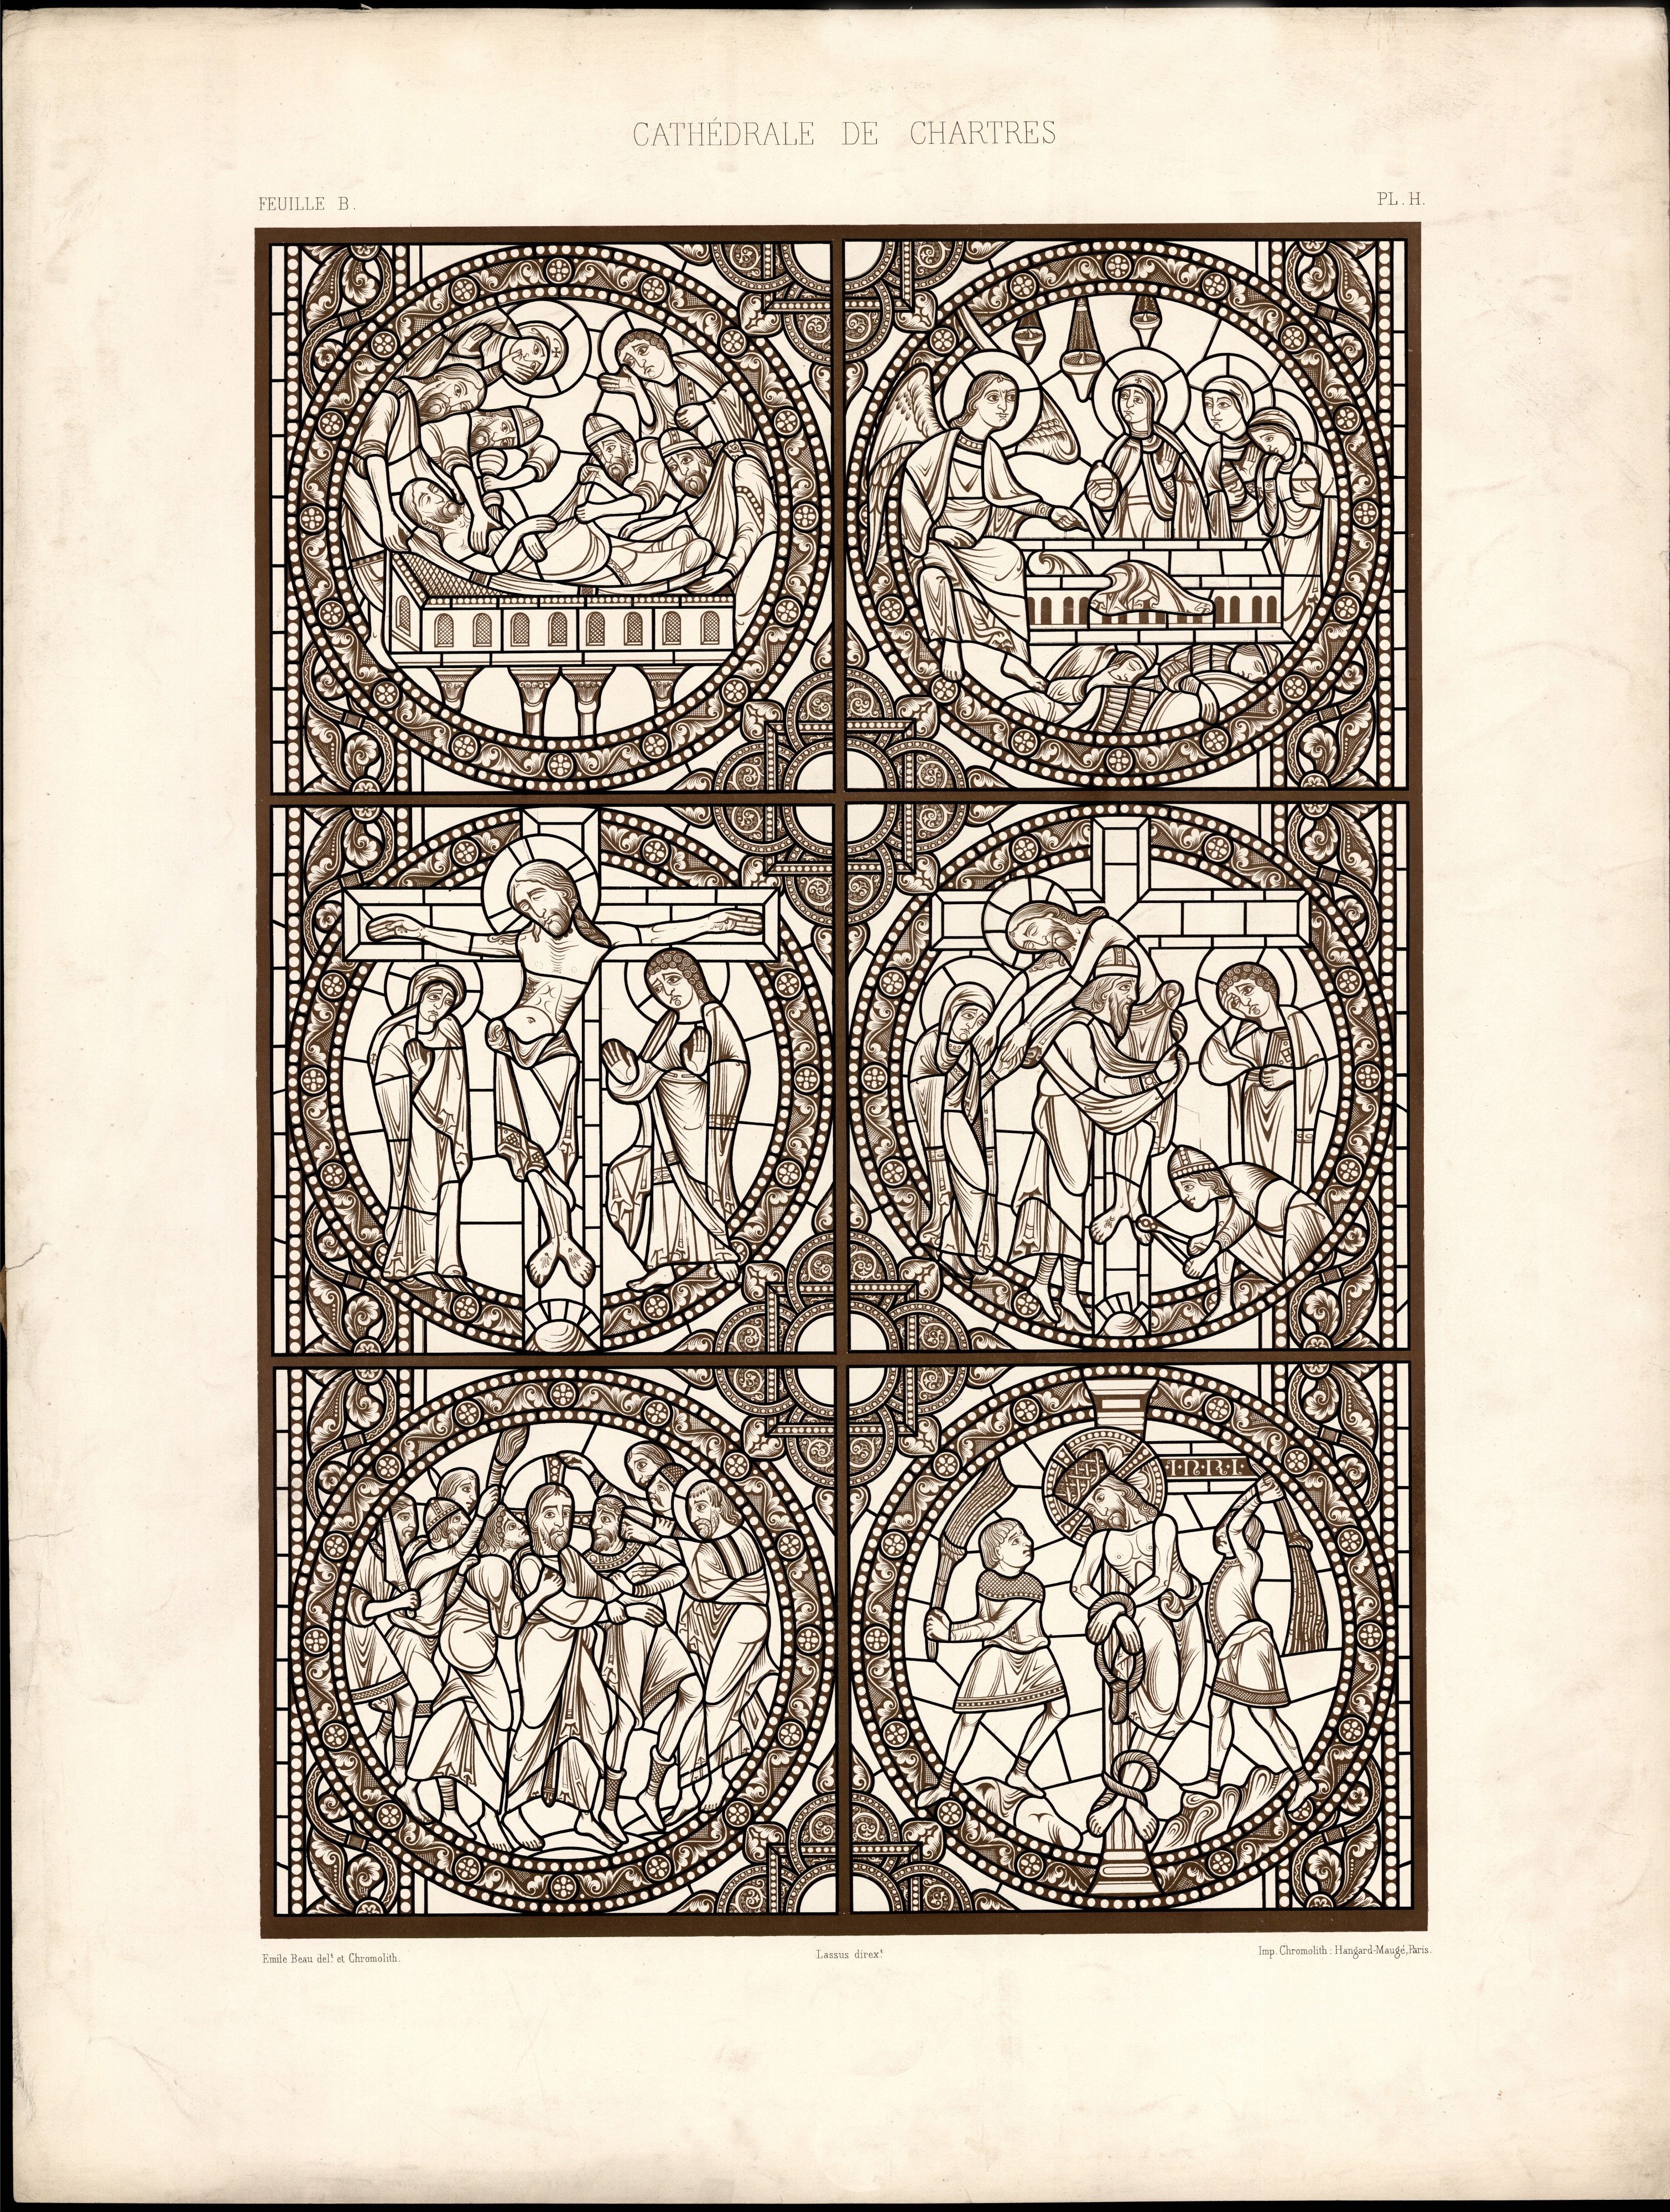 Monografie de la Cathedrale de Chartres - Atlas - Vitrail de la passion de Jesus Christ - Plan H - Feuille B